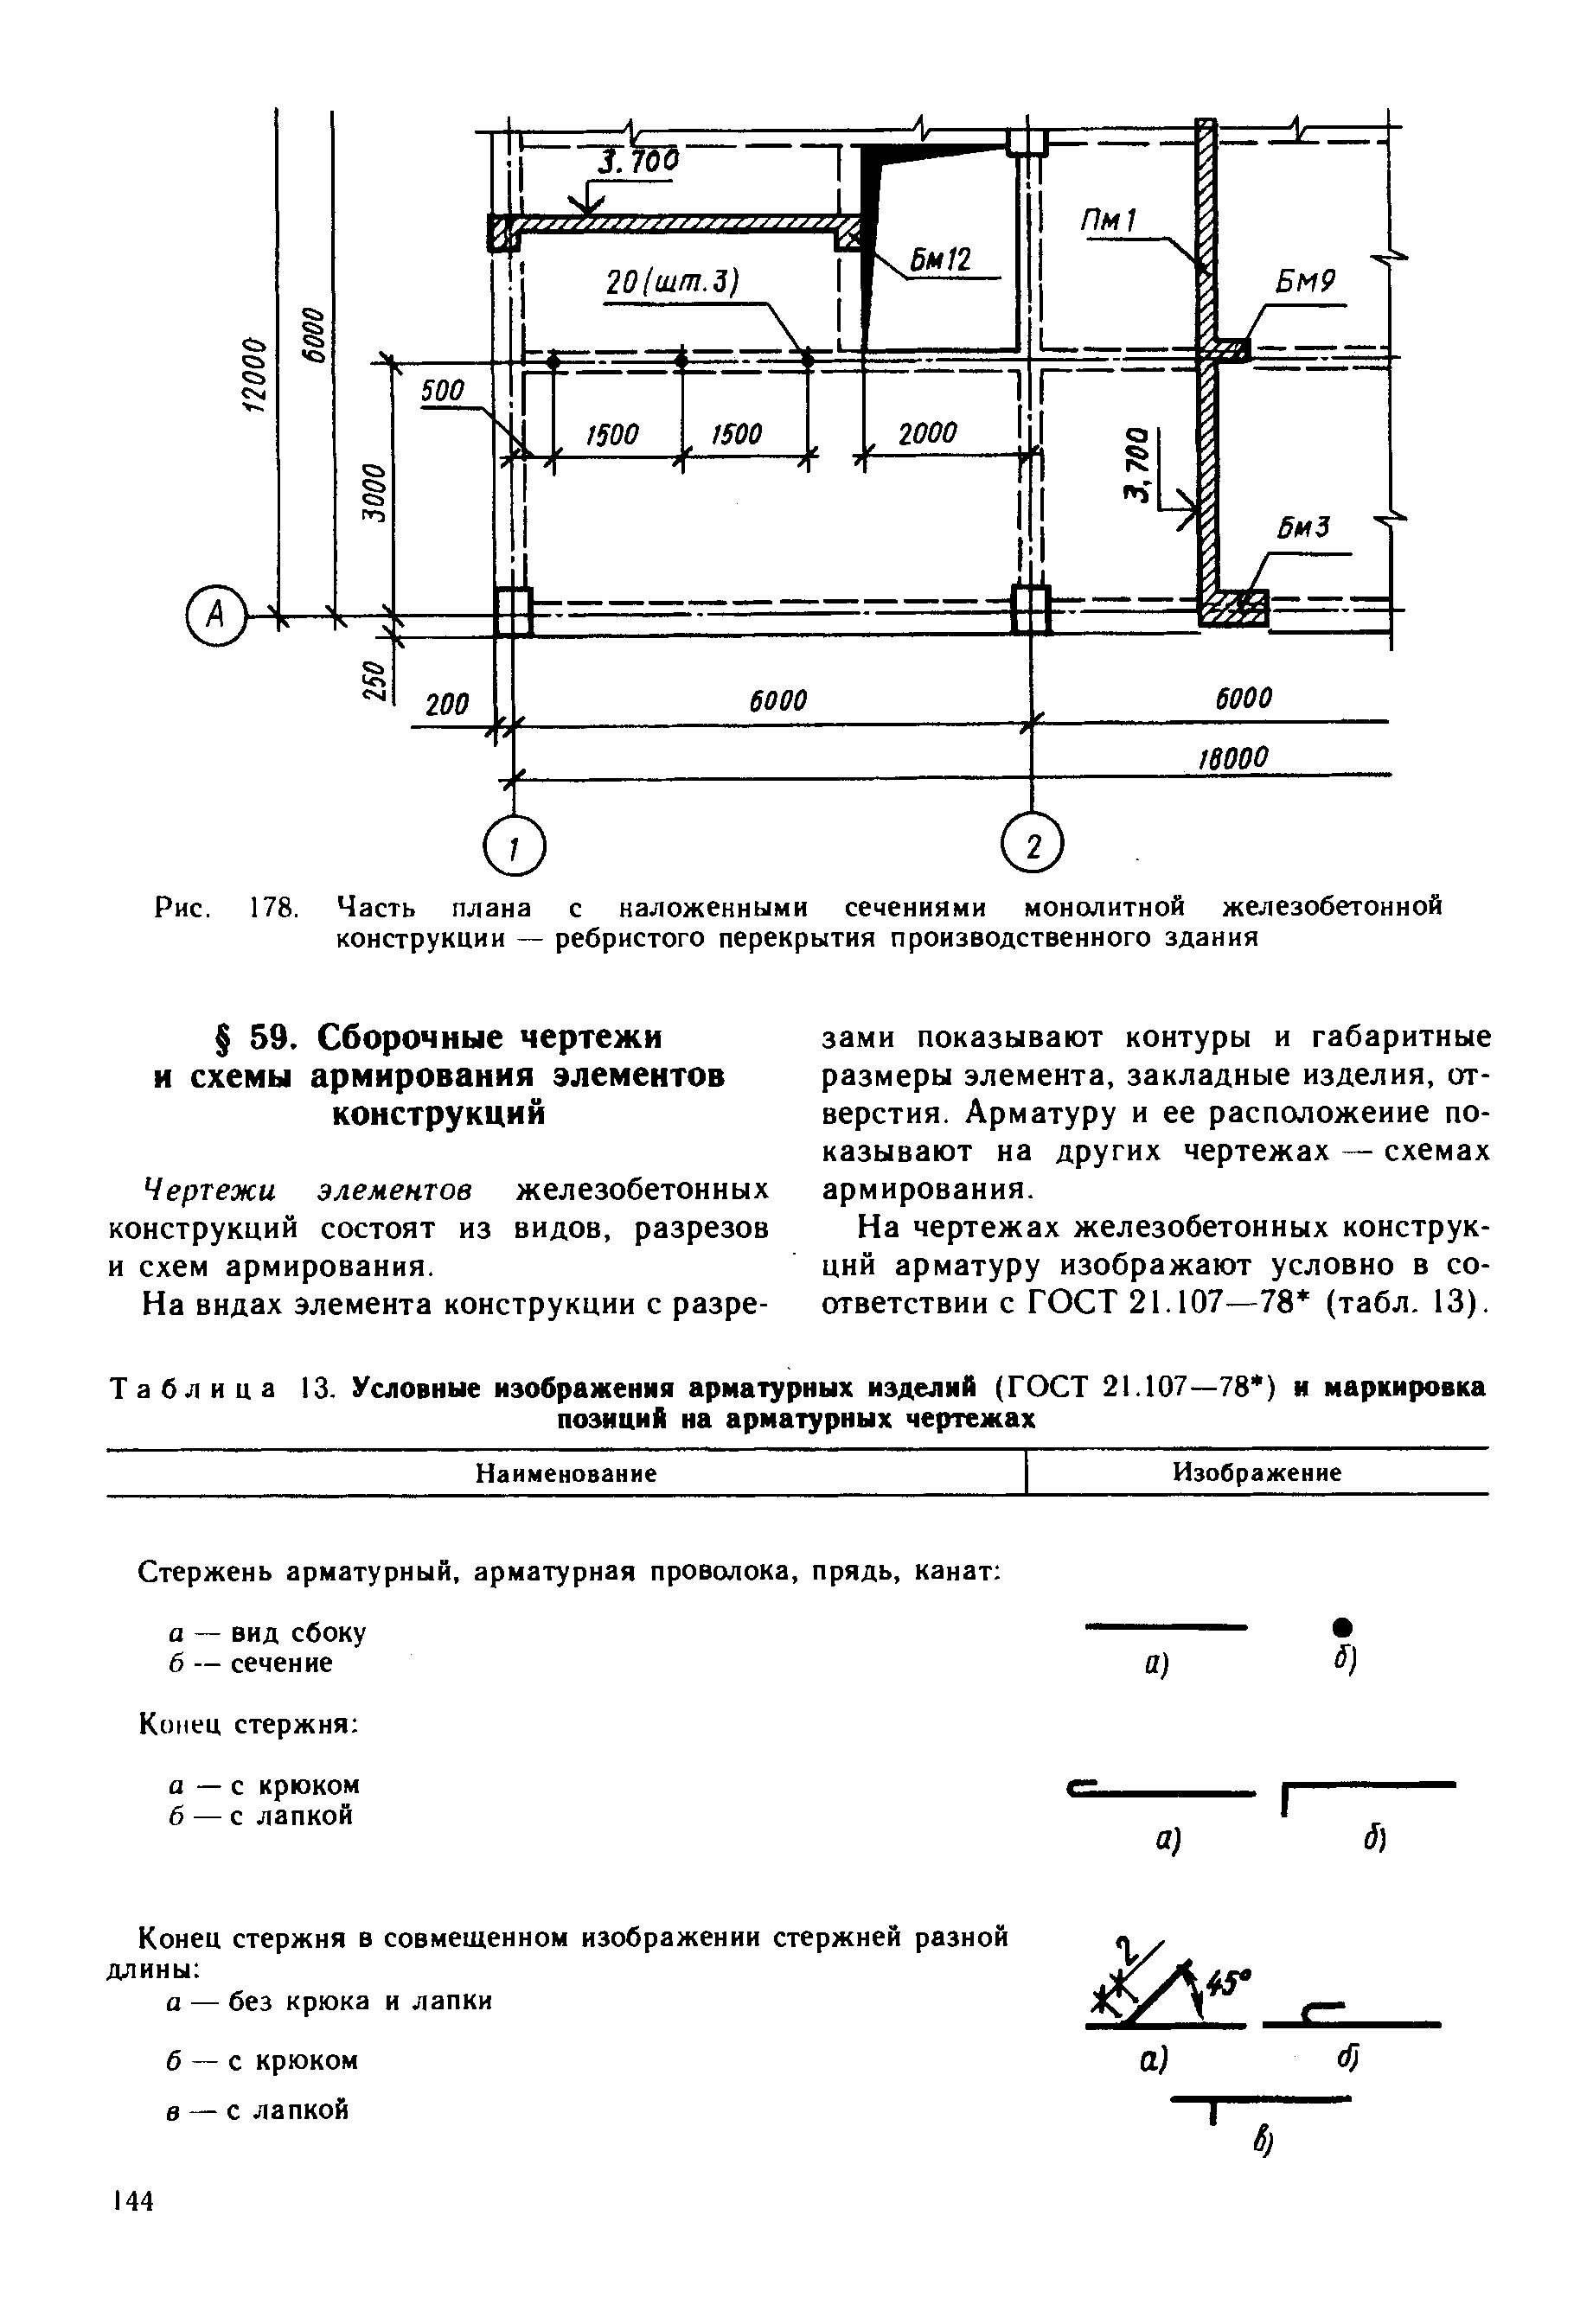 Таблица 13. Условные изображения арматурных изделий (ГОСТ 21.107—78 ) и маркировка
